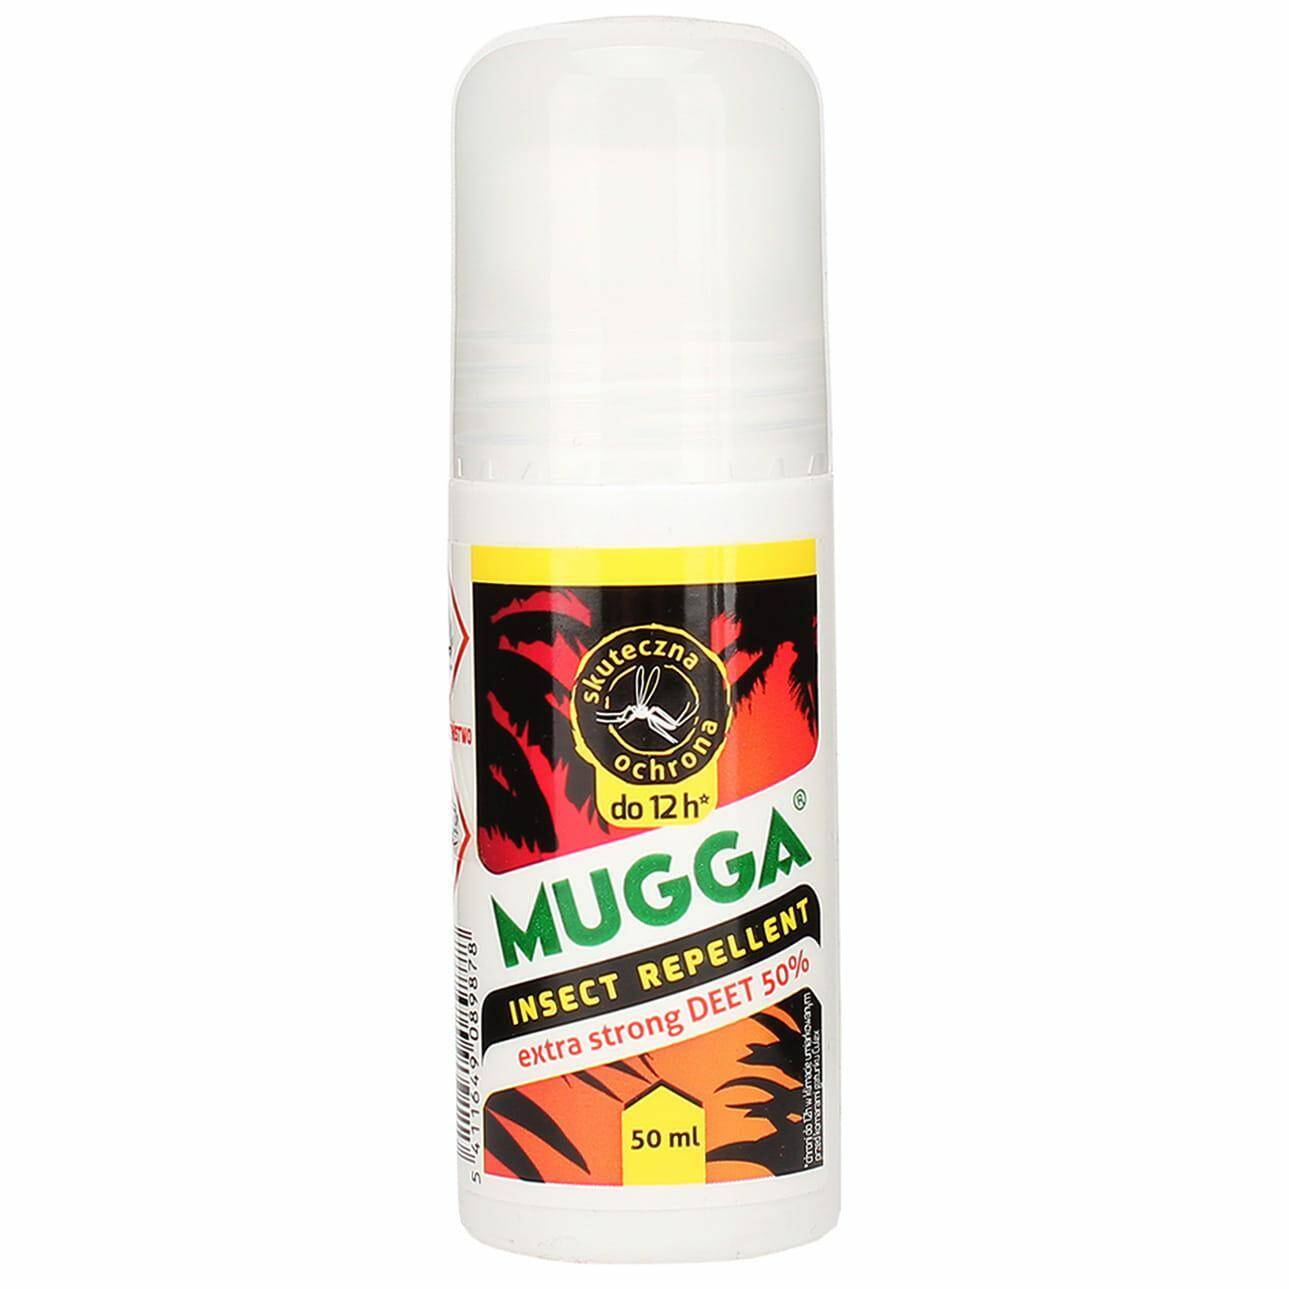 MUGGA ROLL-ON 50 ML 50% deet